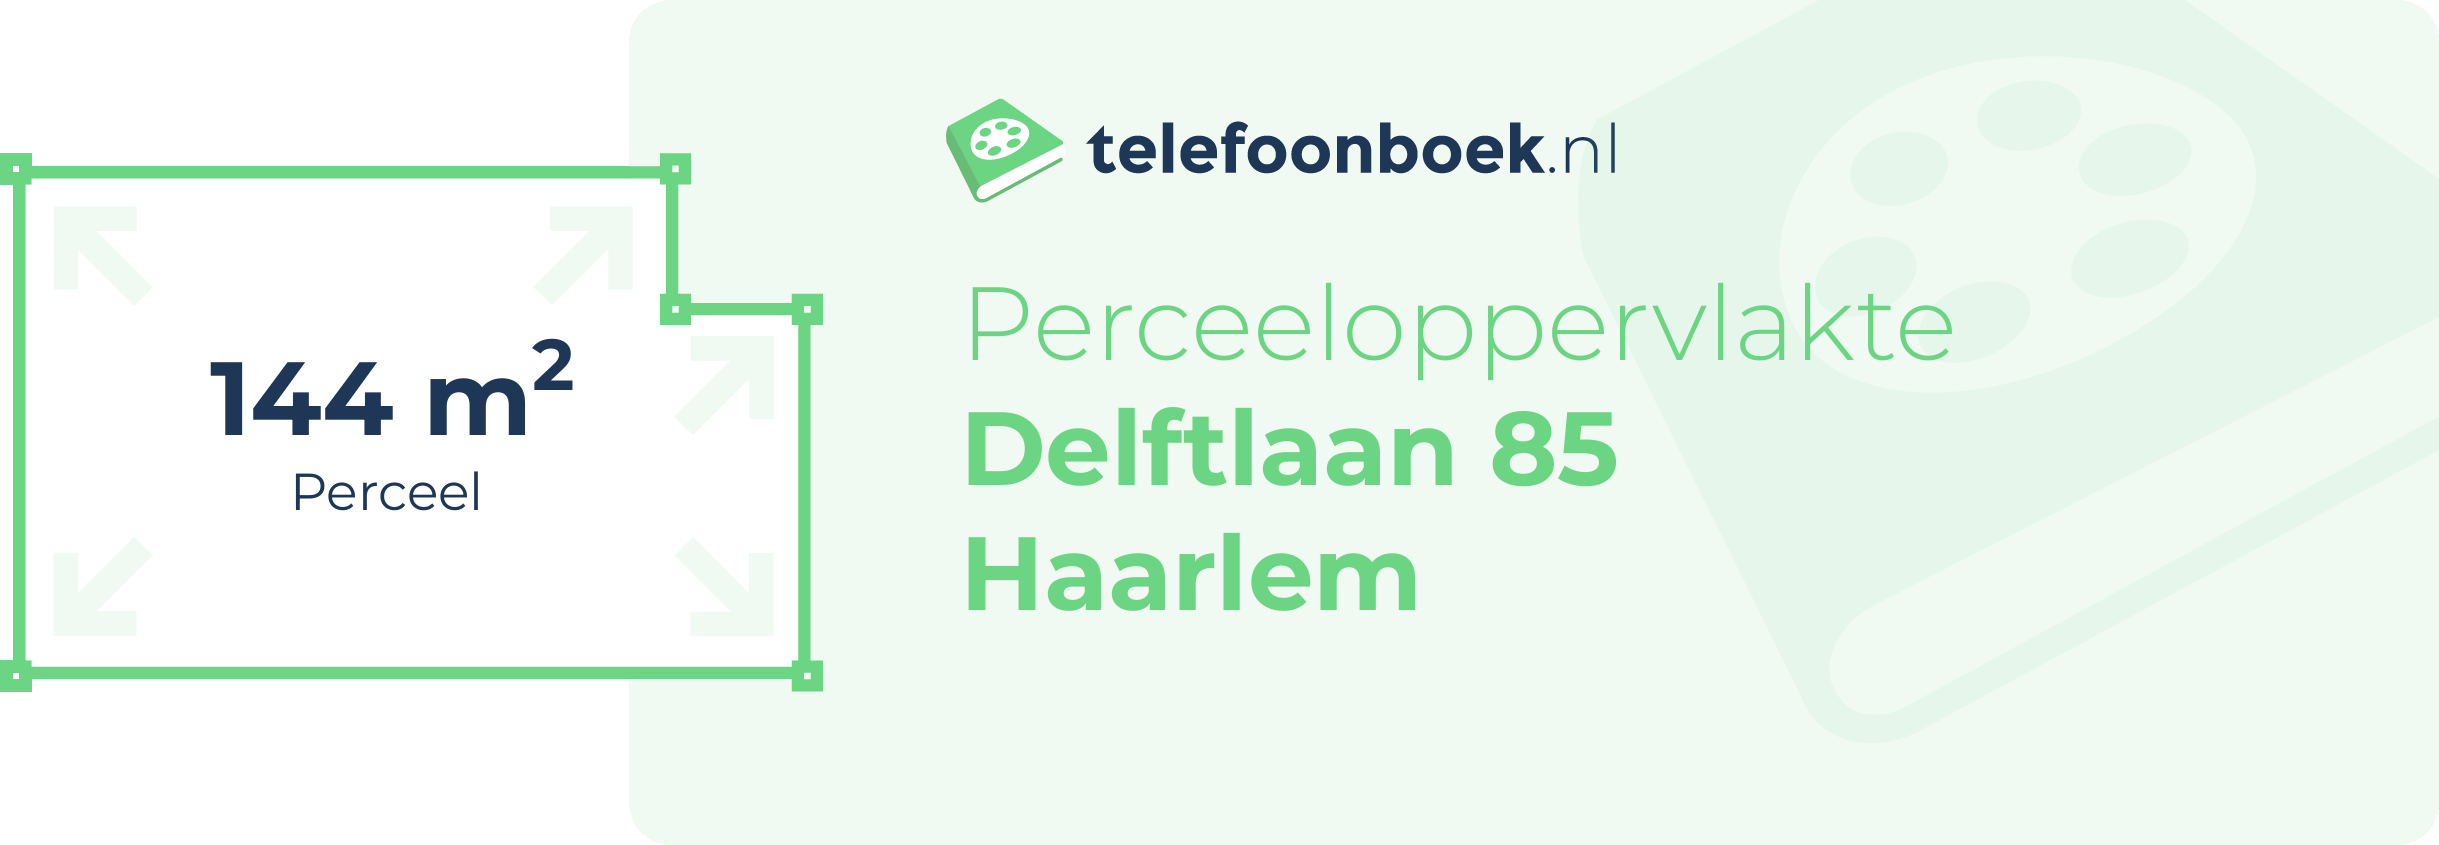 Perceeloppervlakte Delftlaan 85 Haarlem